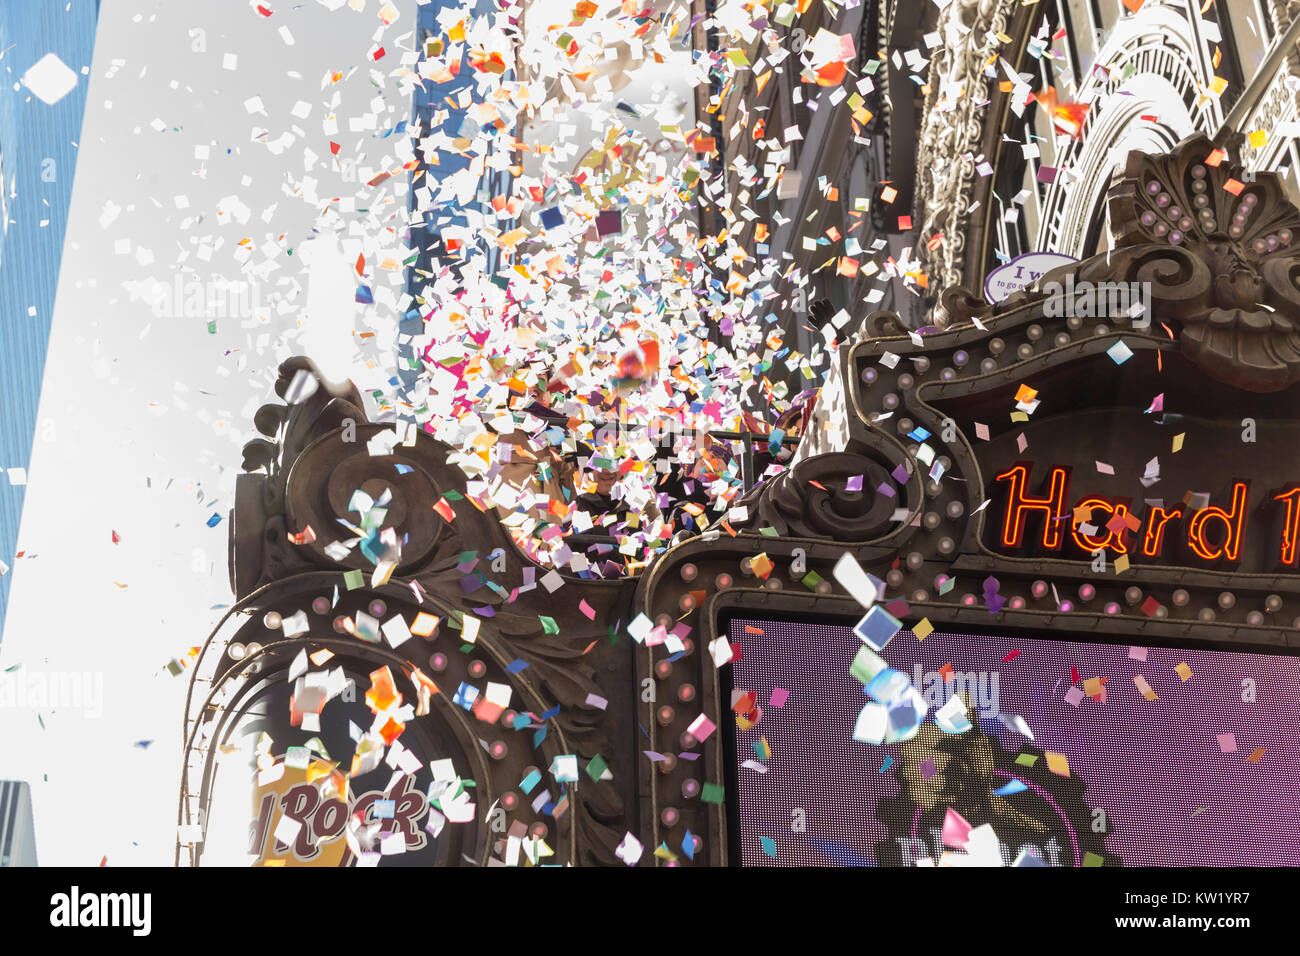 New York, NY - 29. Dezember 2017: Konfetti herrscht während der Prüfung der Kreditwürdigkeit von Konfetti auf dem Times Square für neues Jahr Feier von oben aus Hard Rock Cafe Festzelt Stockfoto